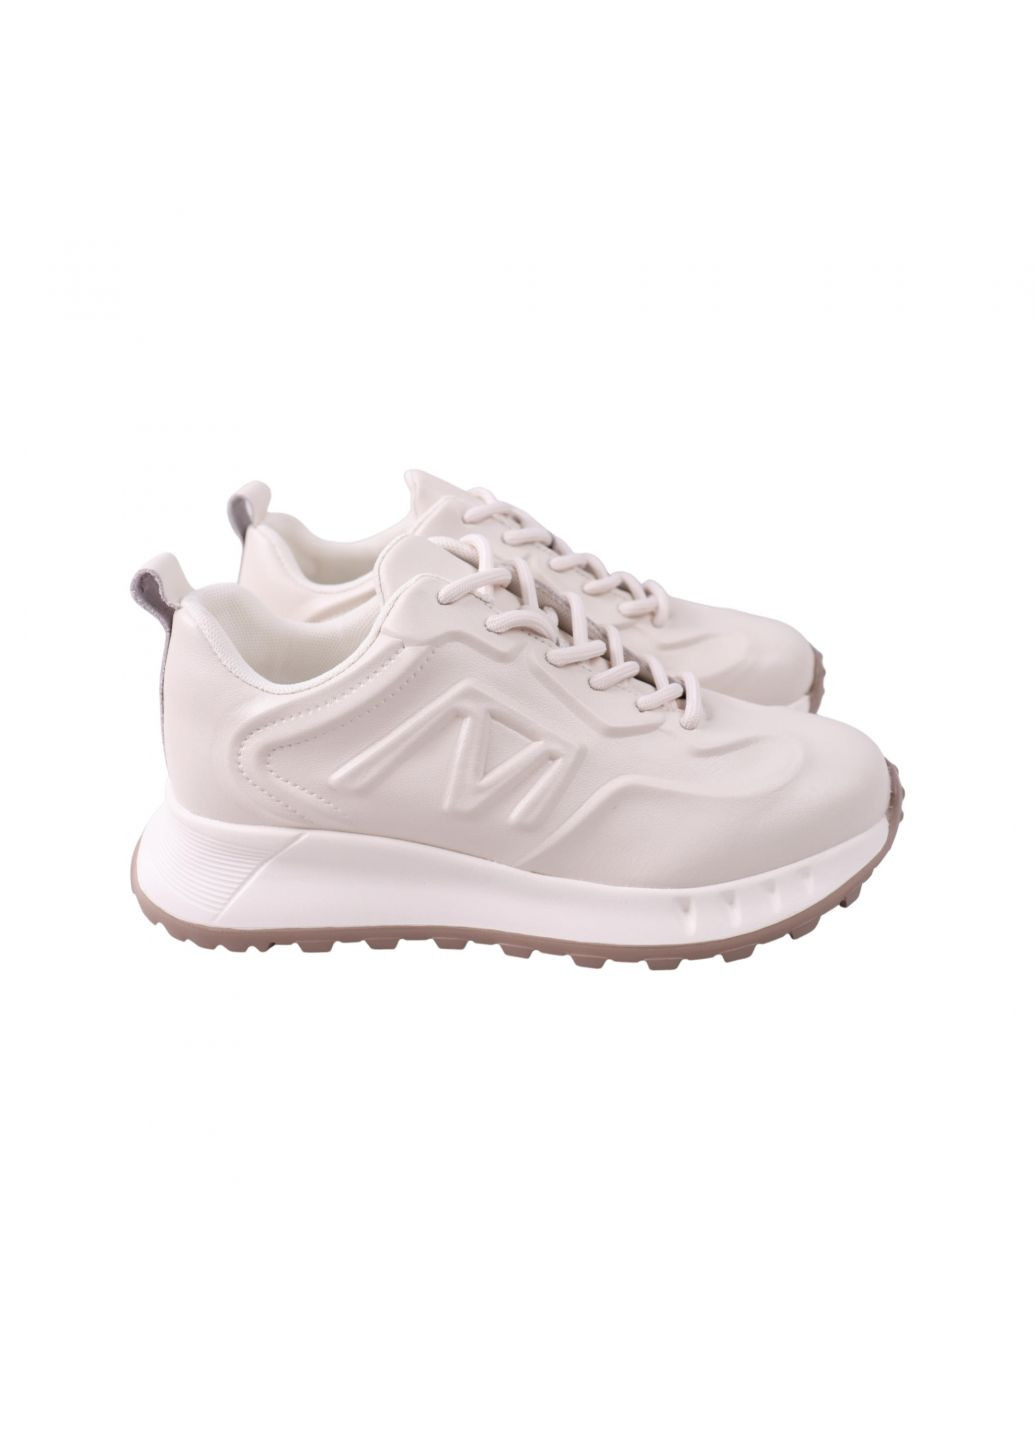 Білі кросівки жіночі молочні натуральна шкіра Lifexpert 1410-23DK